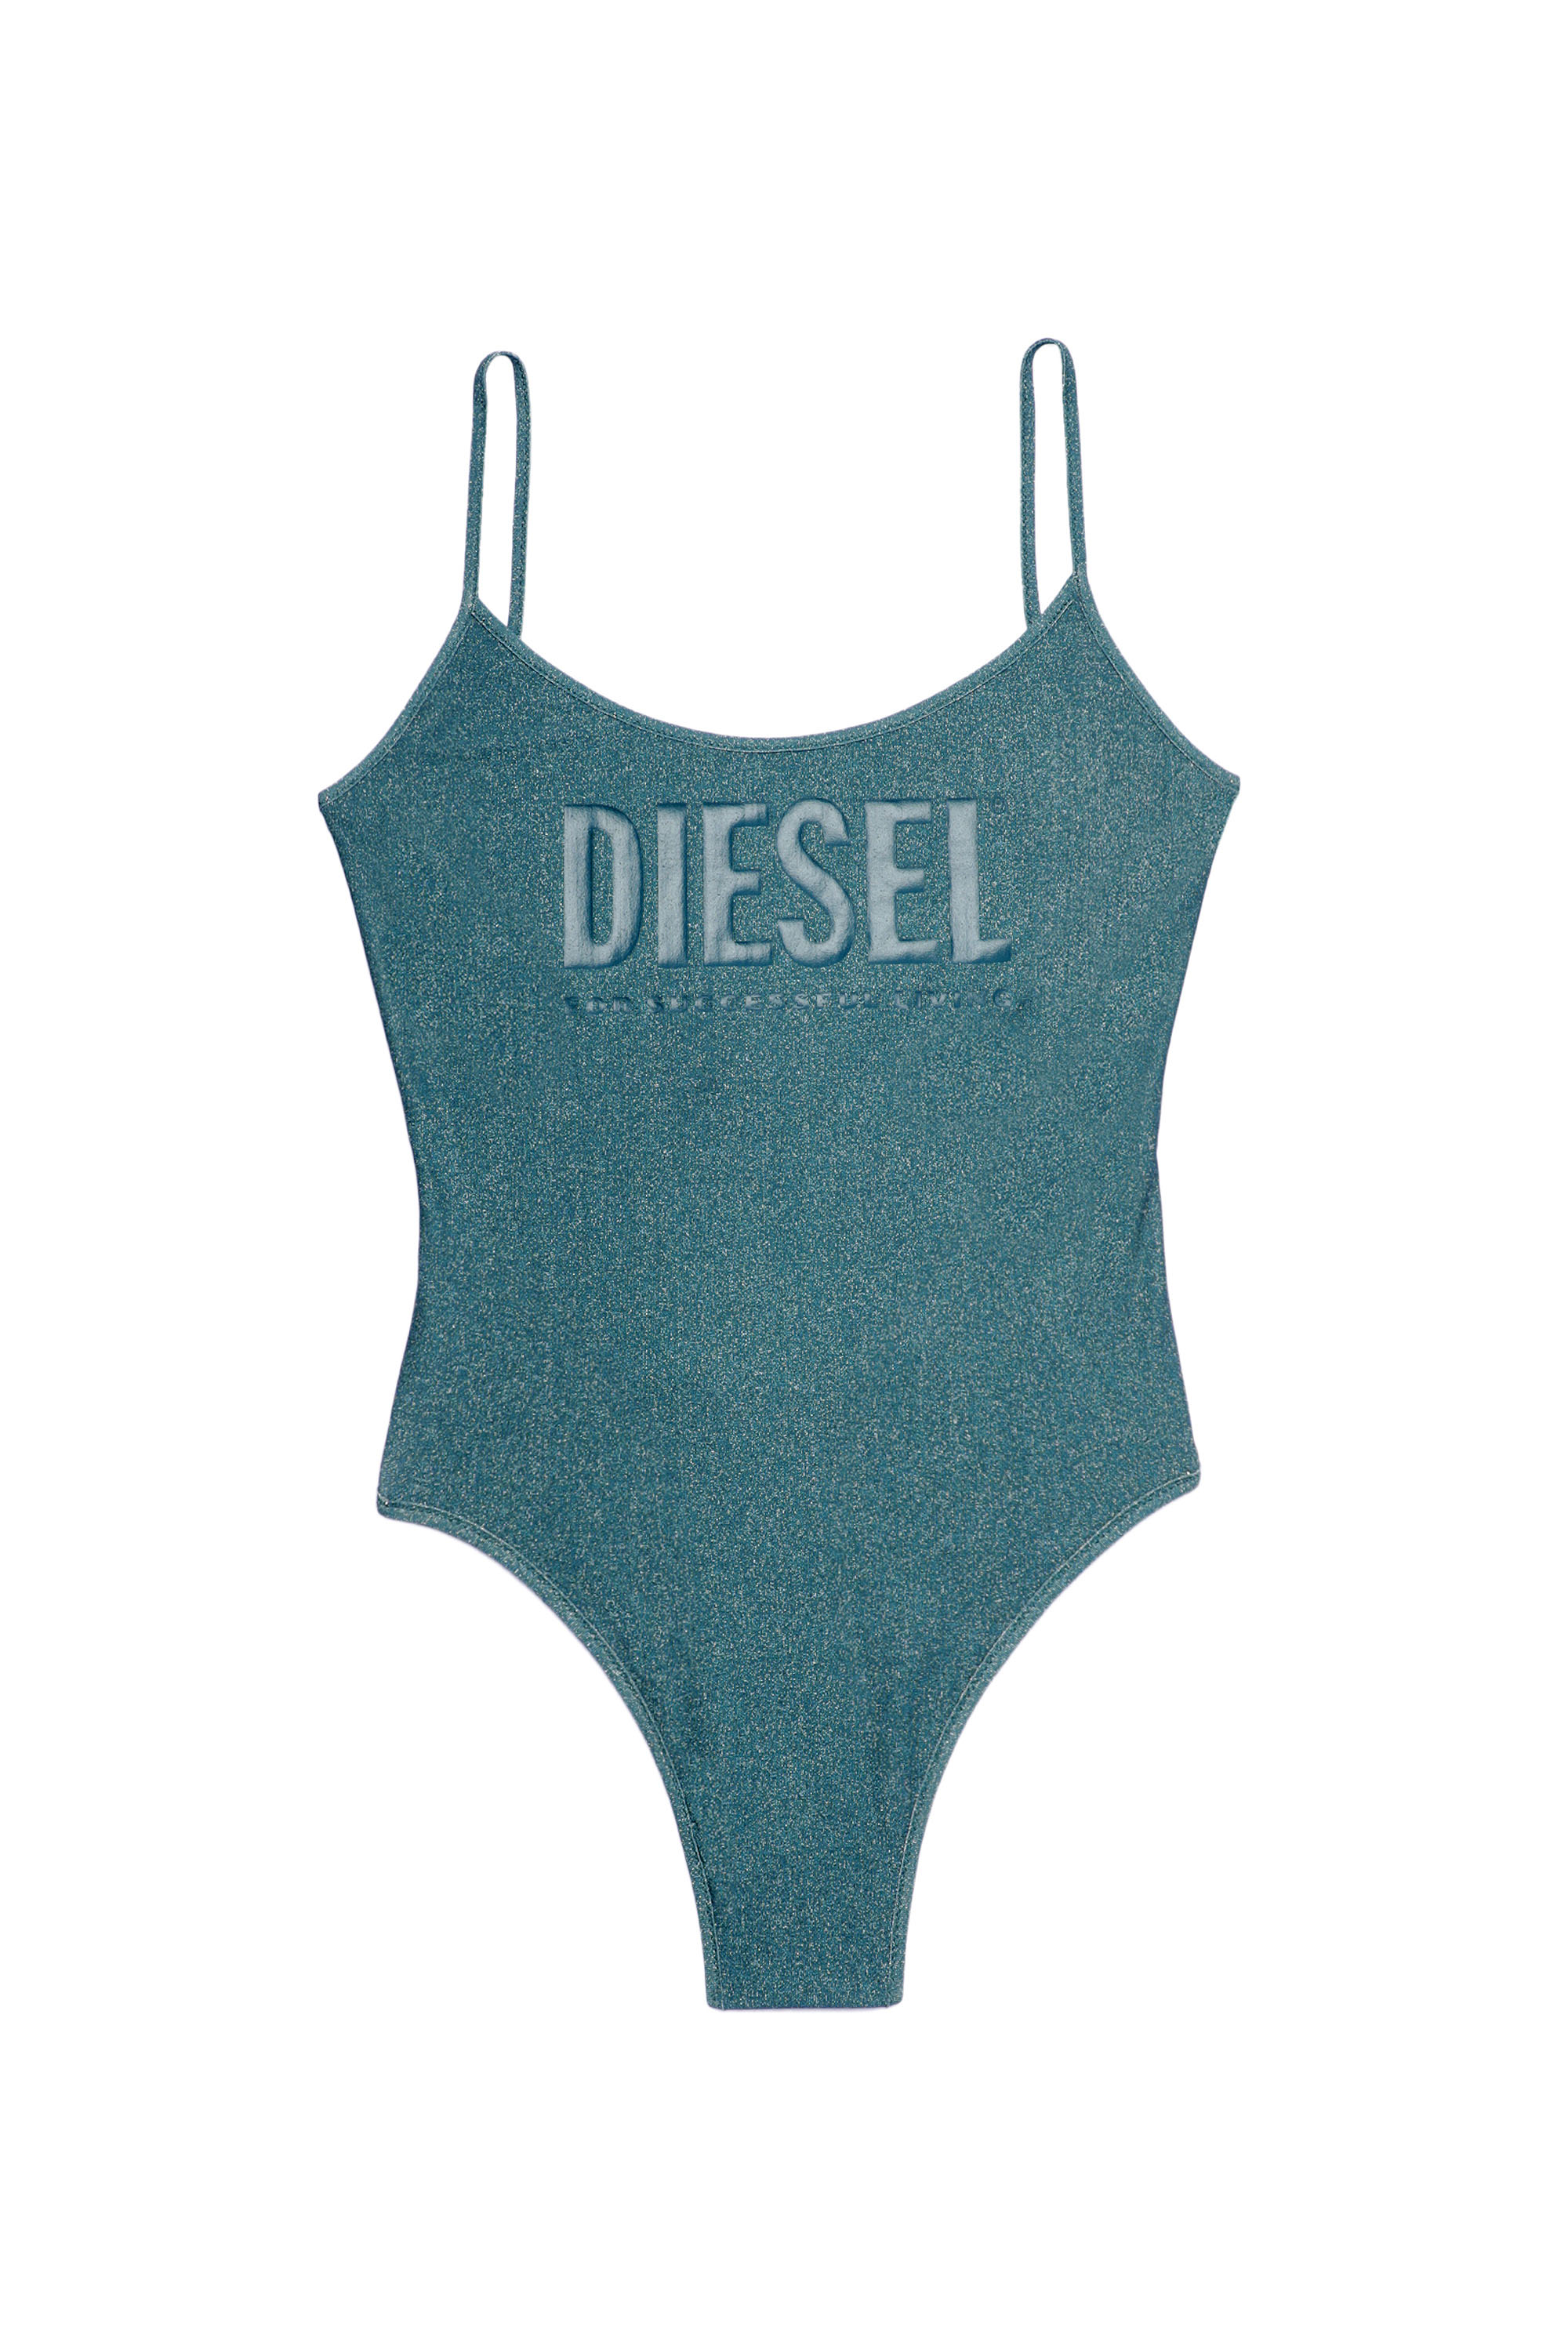 Diesel - BFSW-GRETEL, Blu - Image 1